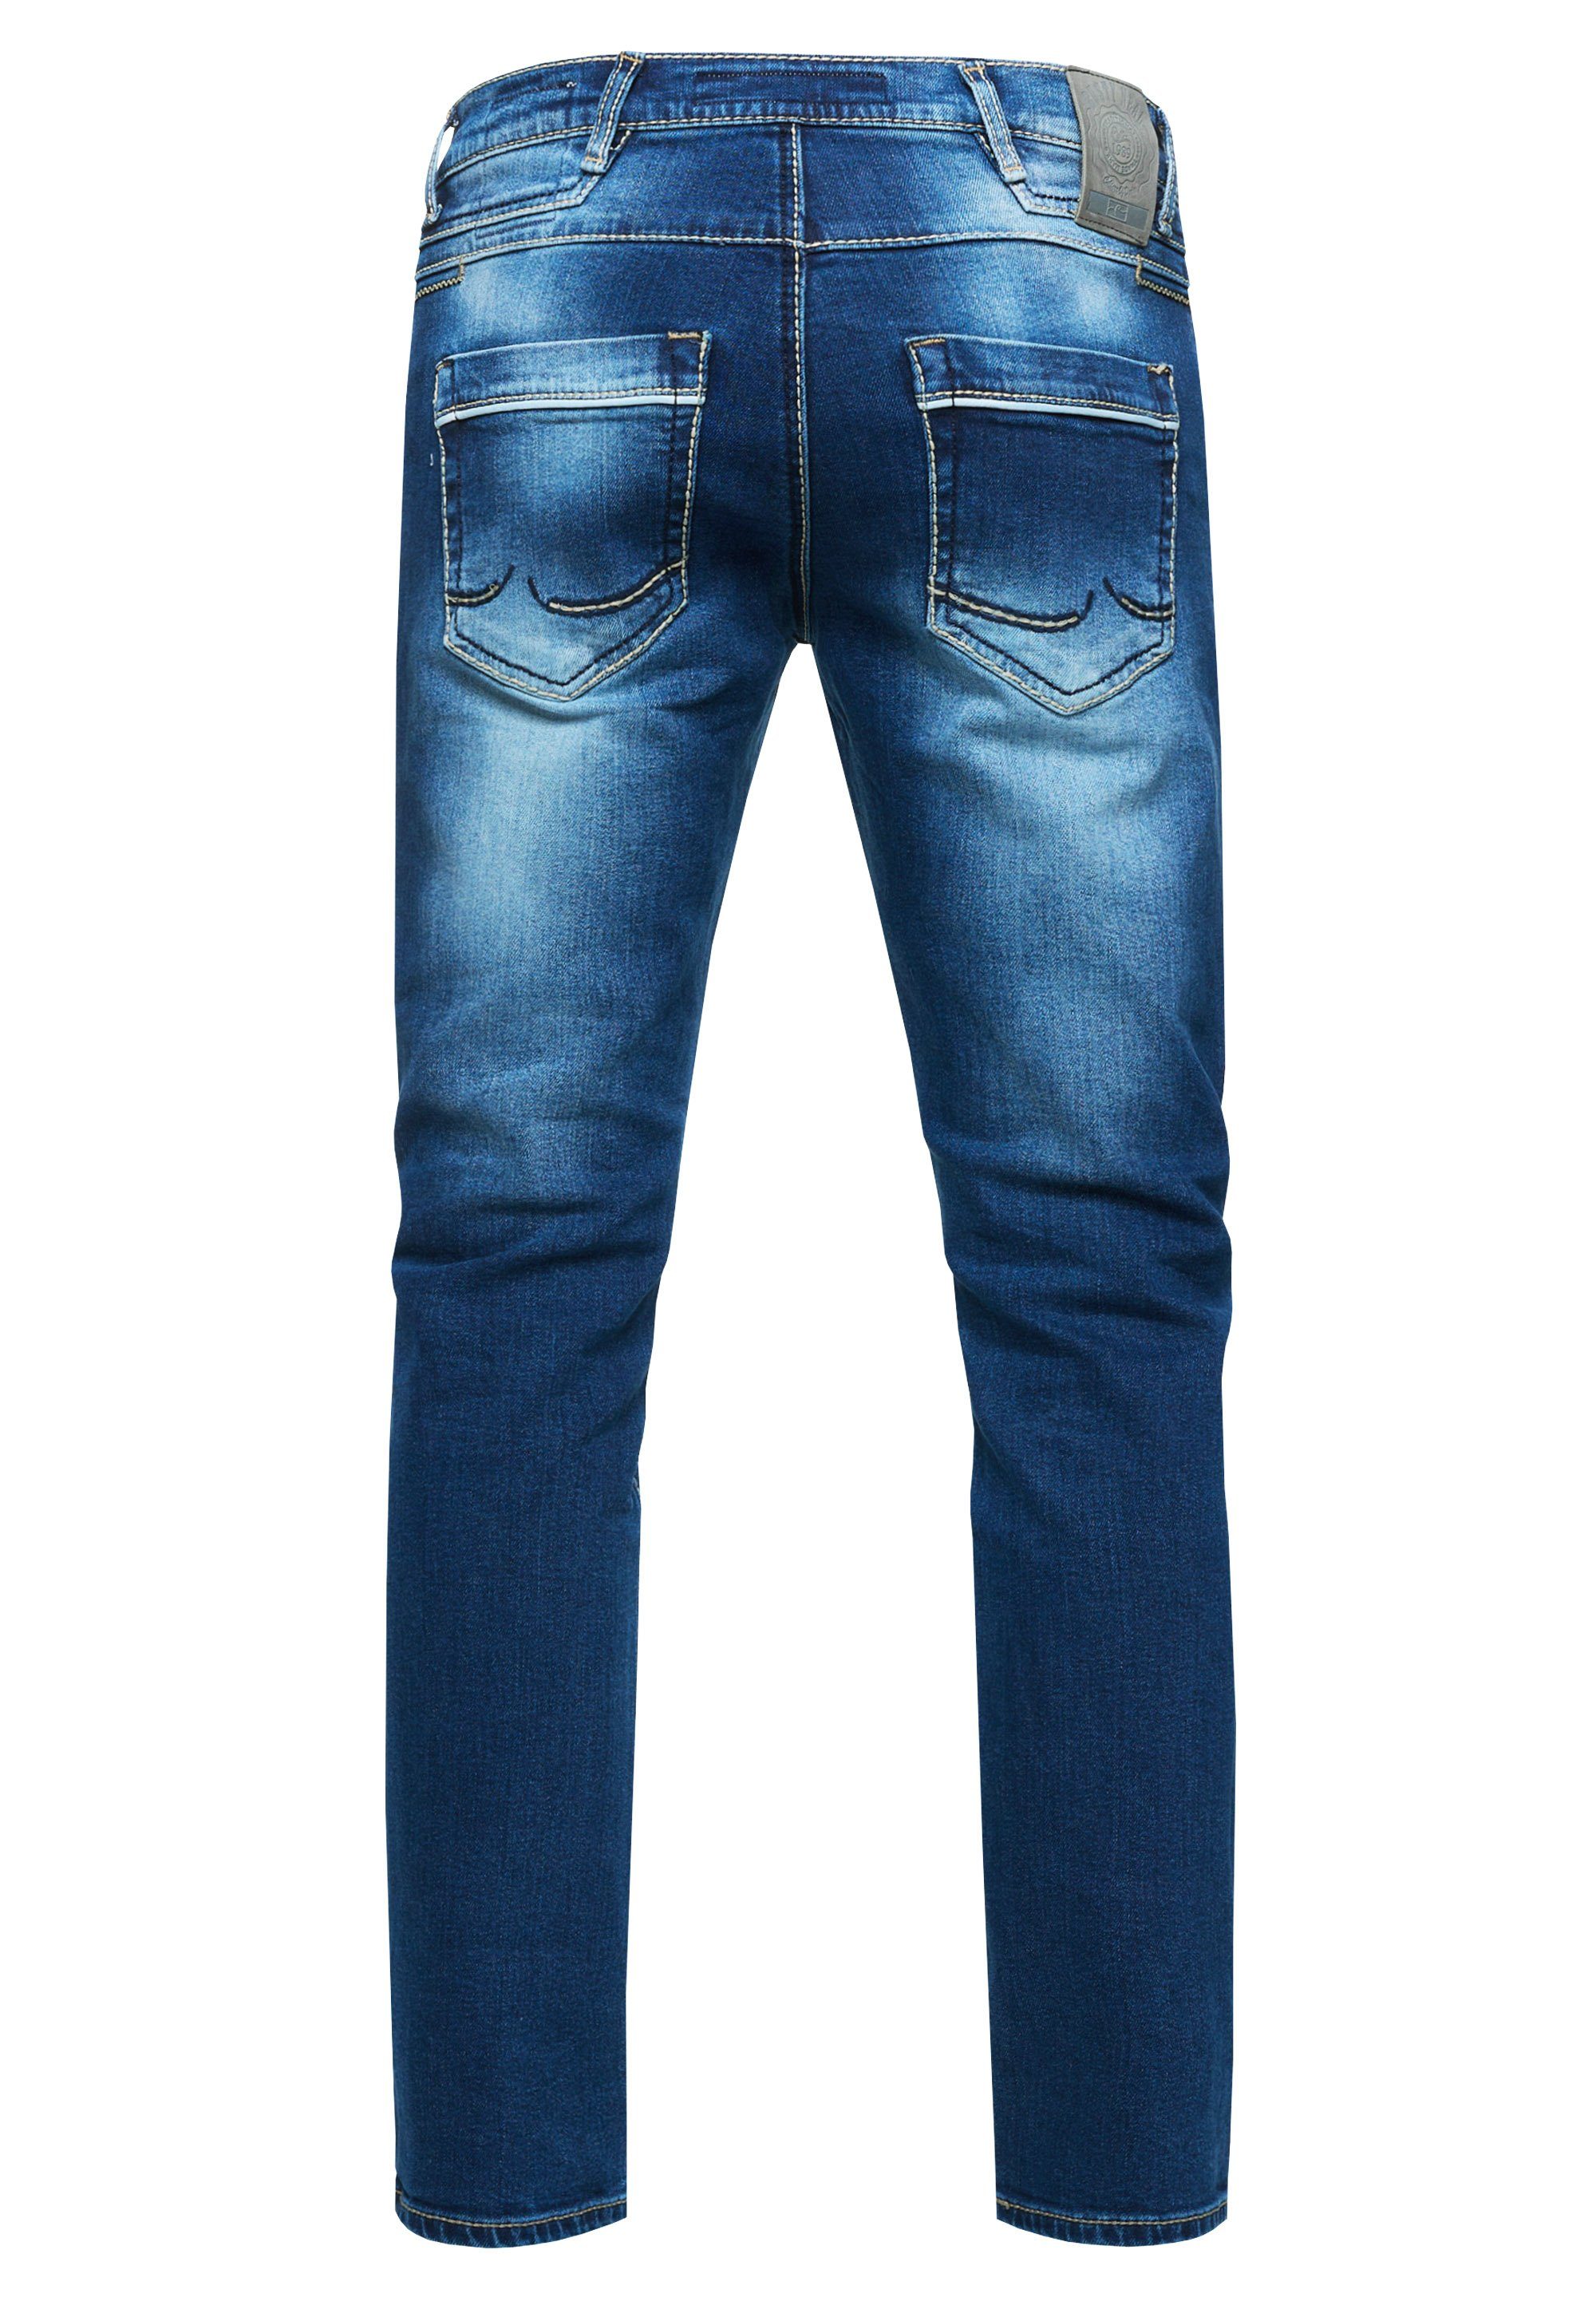 Rusty Neal Straight-Jeans dunkelblau Kontrastnähten TOYAMA coolen mit